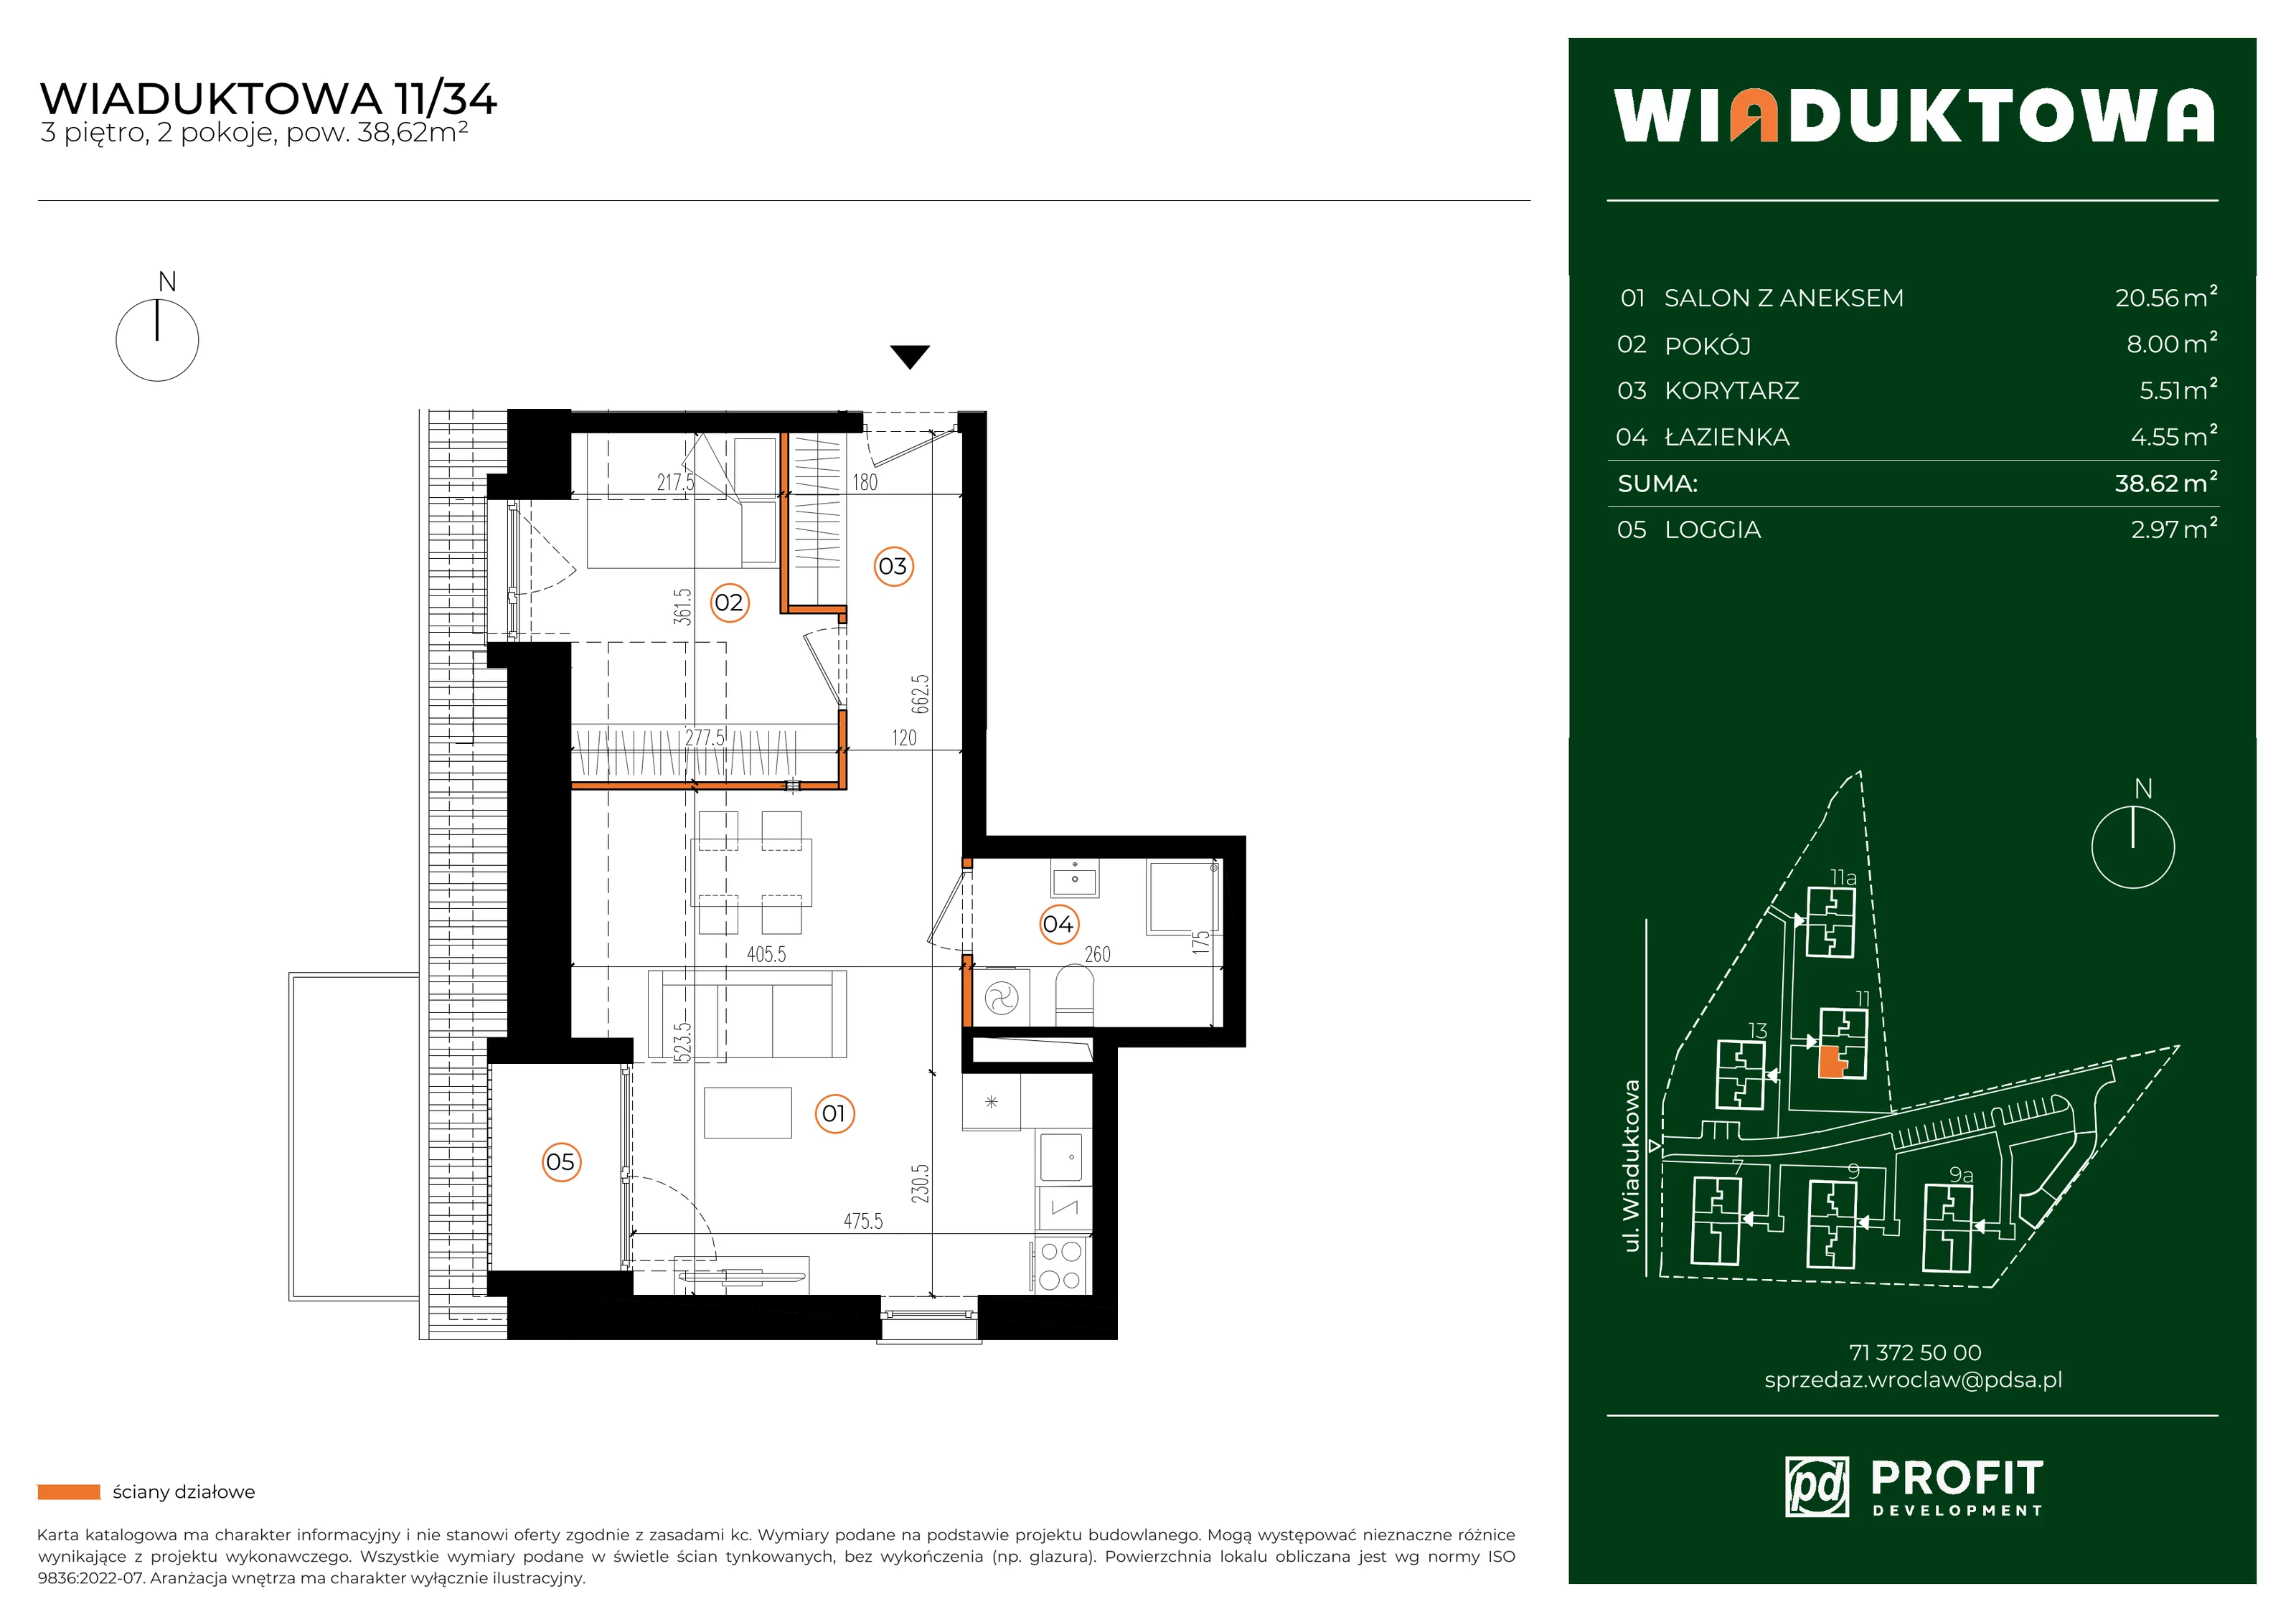 Mieszkanie 38,62 m², piętro 3, oferta nr WI/11/34, Wiaduktowa, Wrocław, Krzyki-Partynice, Krzyki, ul. Wiaduktowa